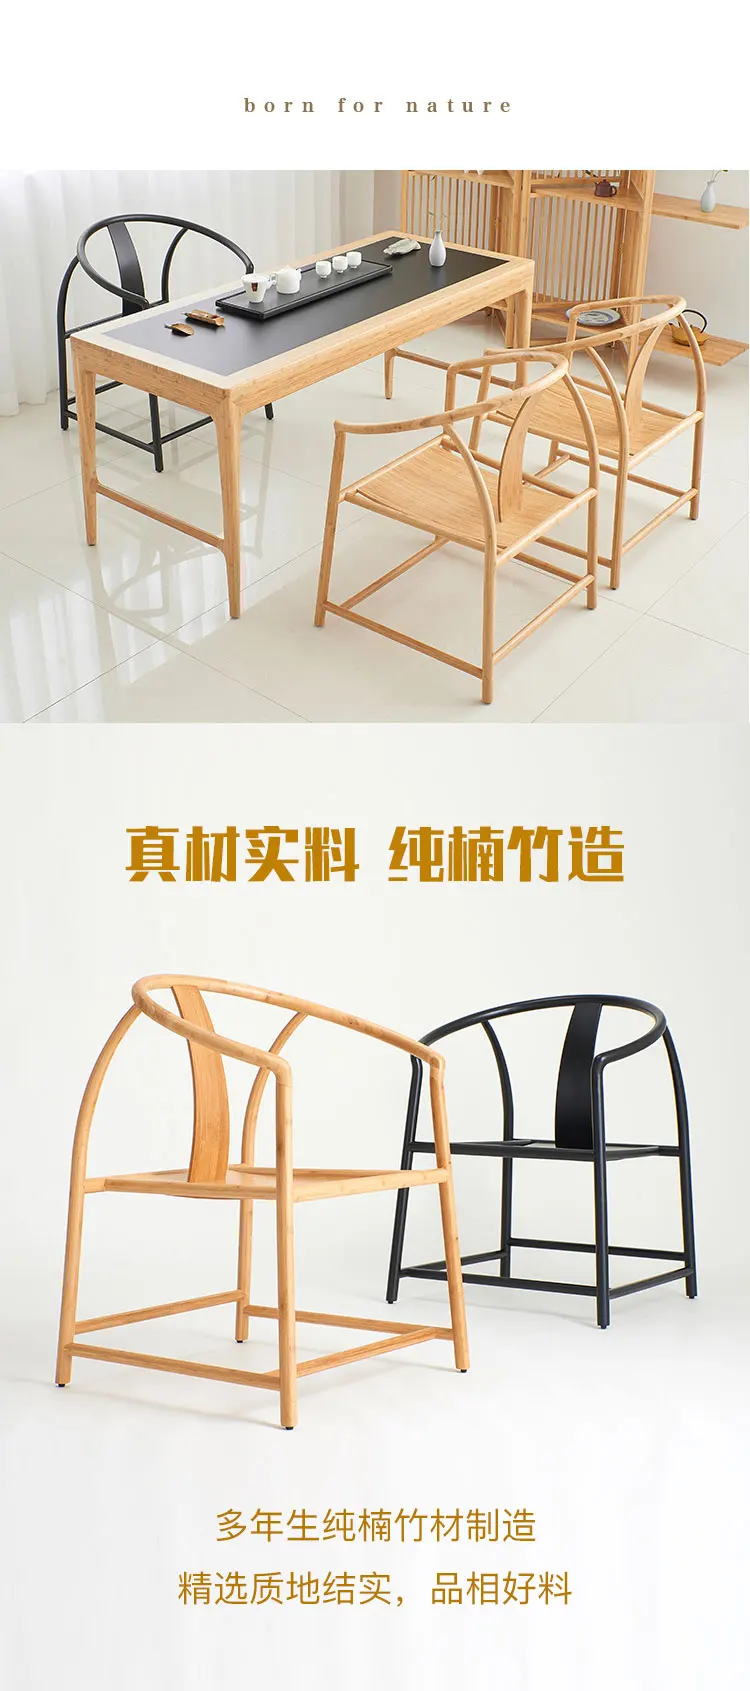 Fauteuil бамбуковый стул poltrona chaise salle a manger модеран cadeira шезлонги fauteuil салон sessel кресло гостиная